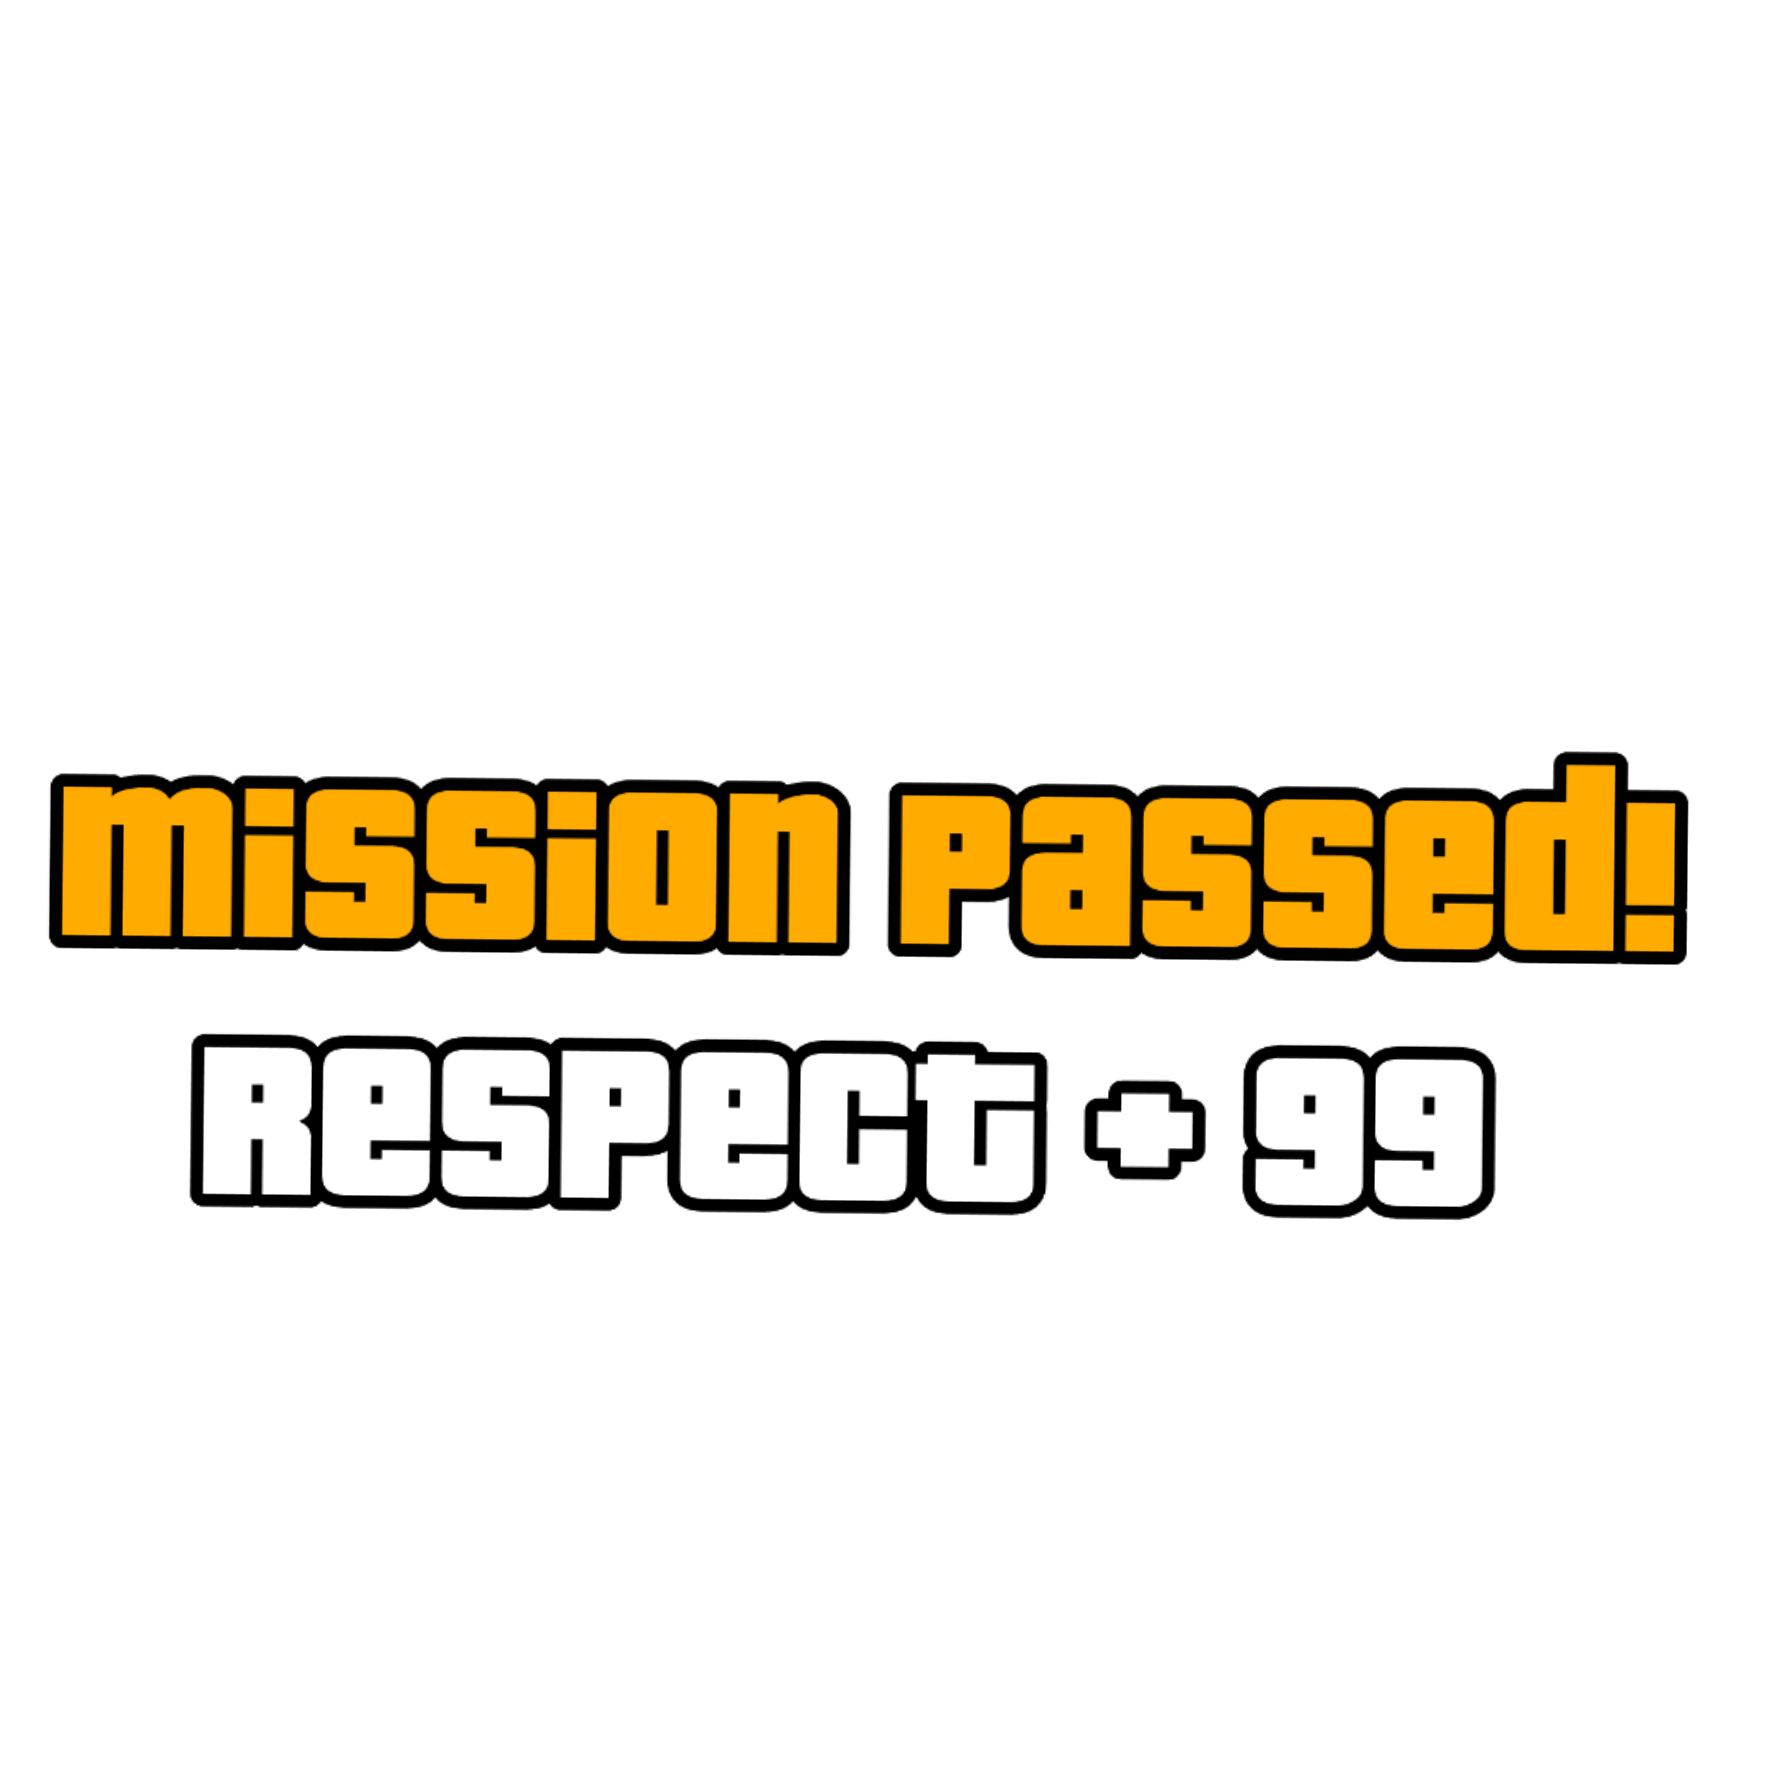 Задание выполнено сделанная надпись темы изучены. ГТА Сан андреас Mission complete. GTA Mission Passed. Mission complete respect+ GTA. Mission Passed без фона.